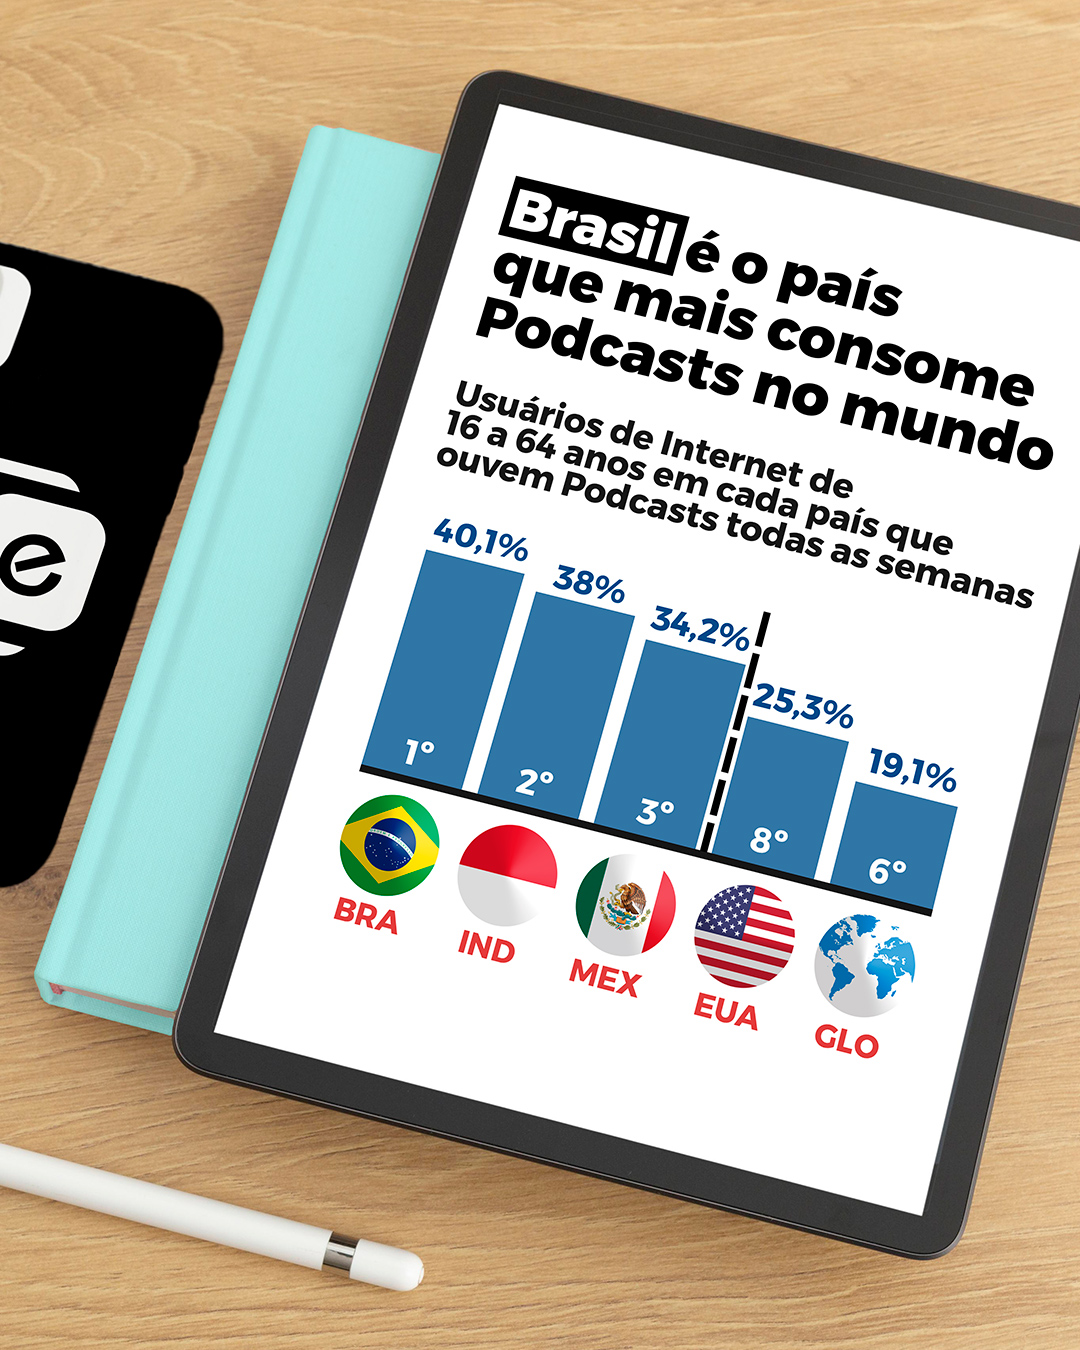 Descubra o universo dos podcasts no Brasil